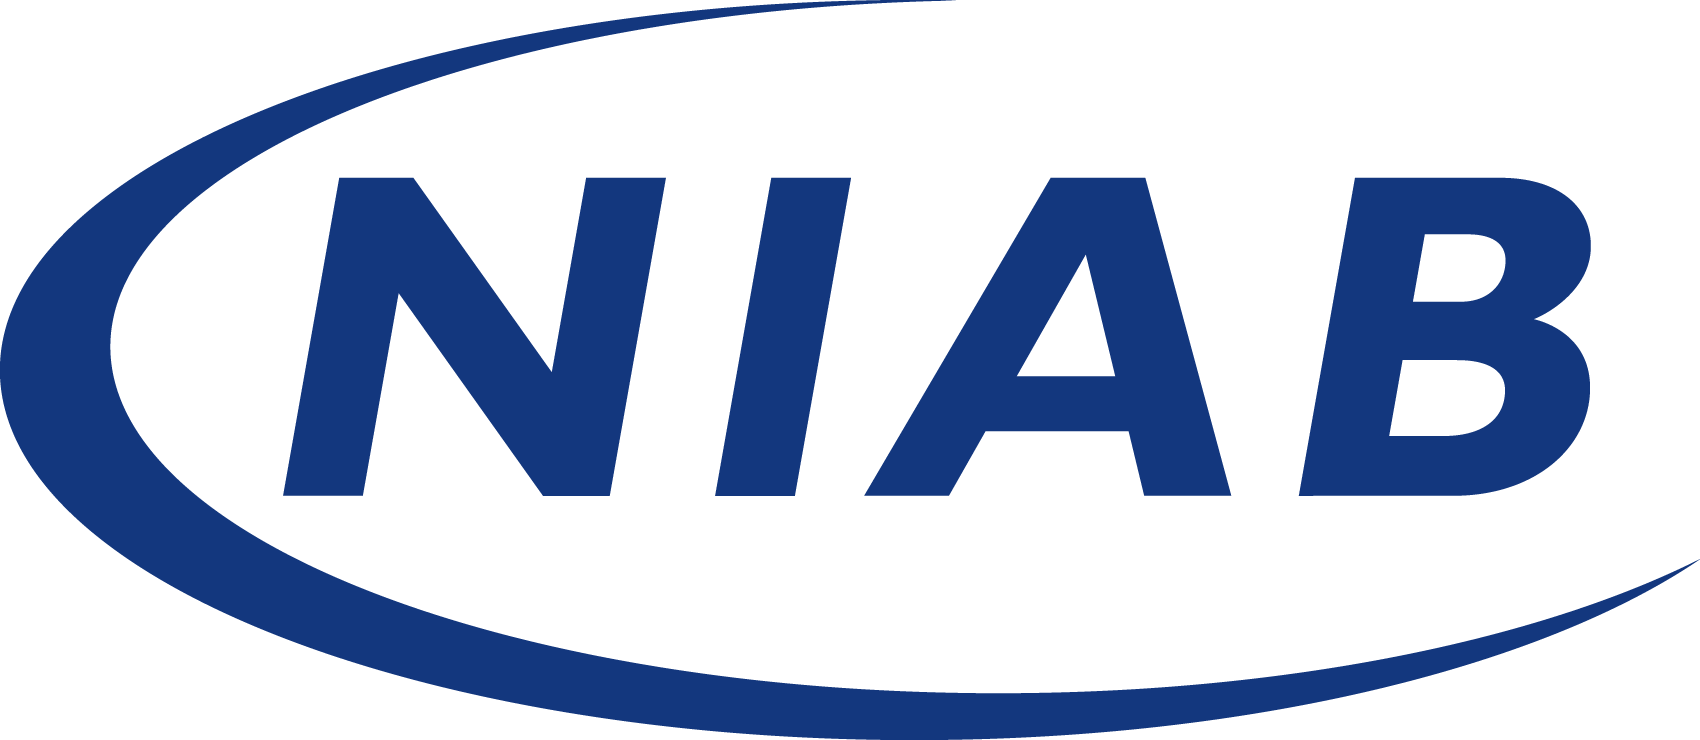 NIAB logo